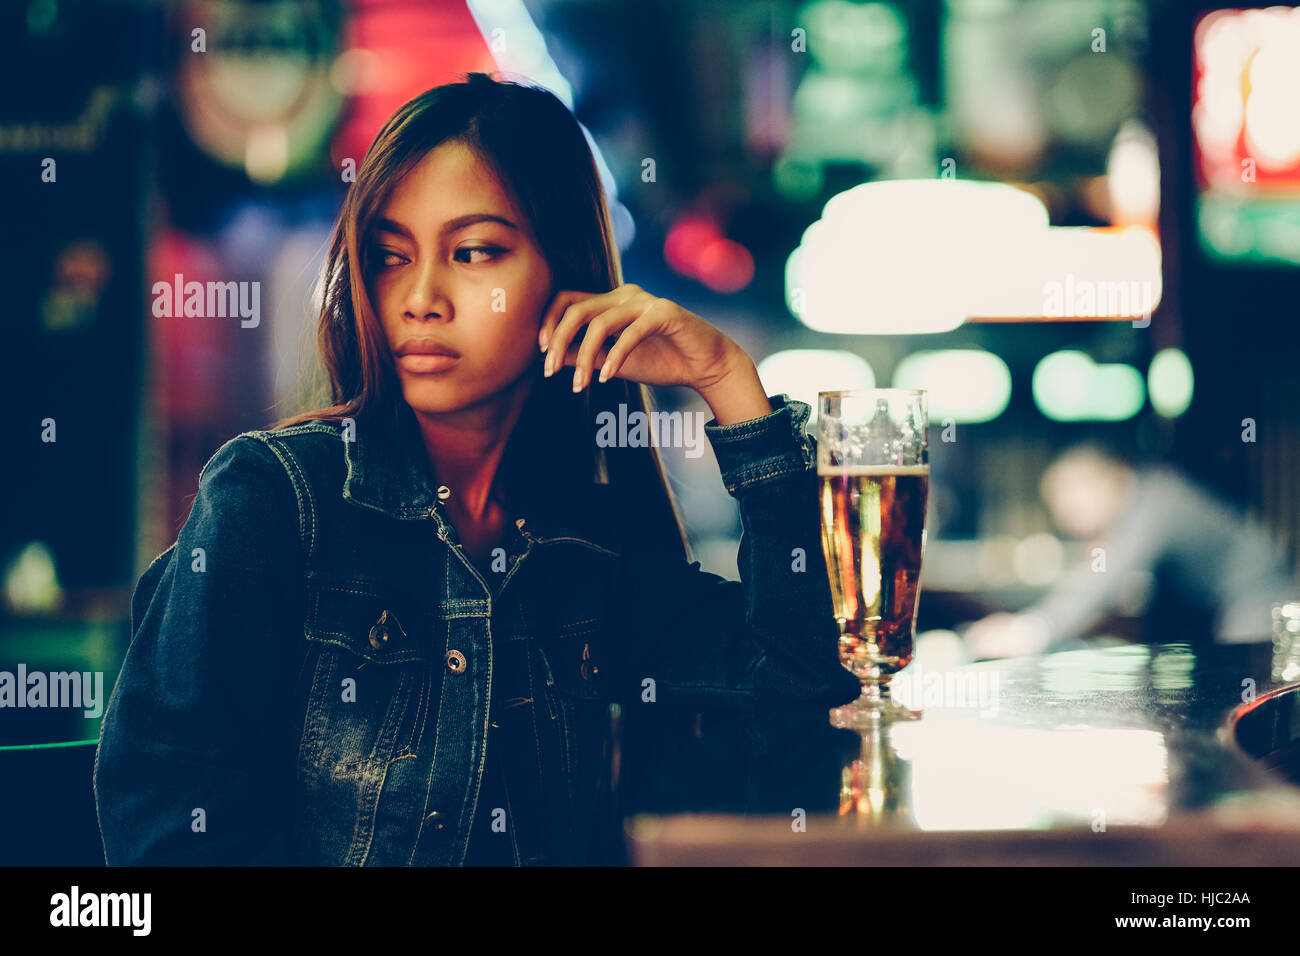 La vita notturna, ragazza per adulti in attesa nel bar a bere bear Foto Stock